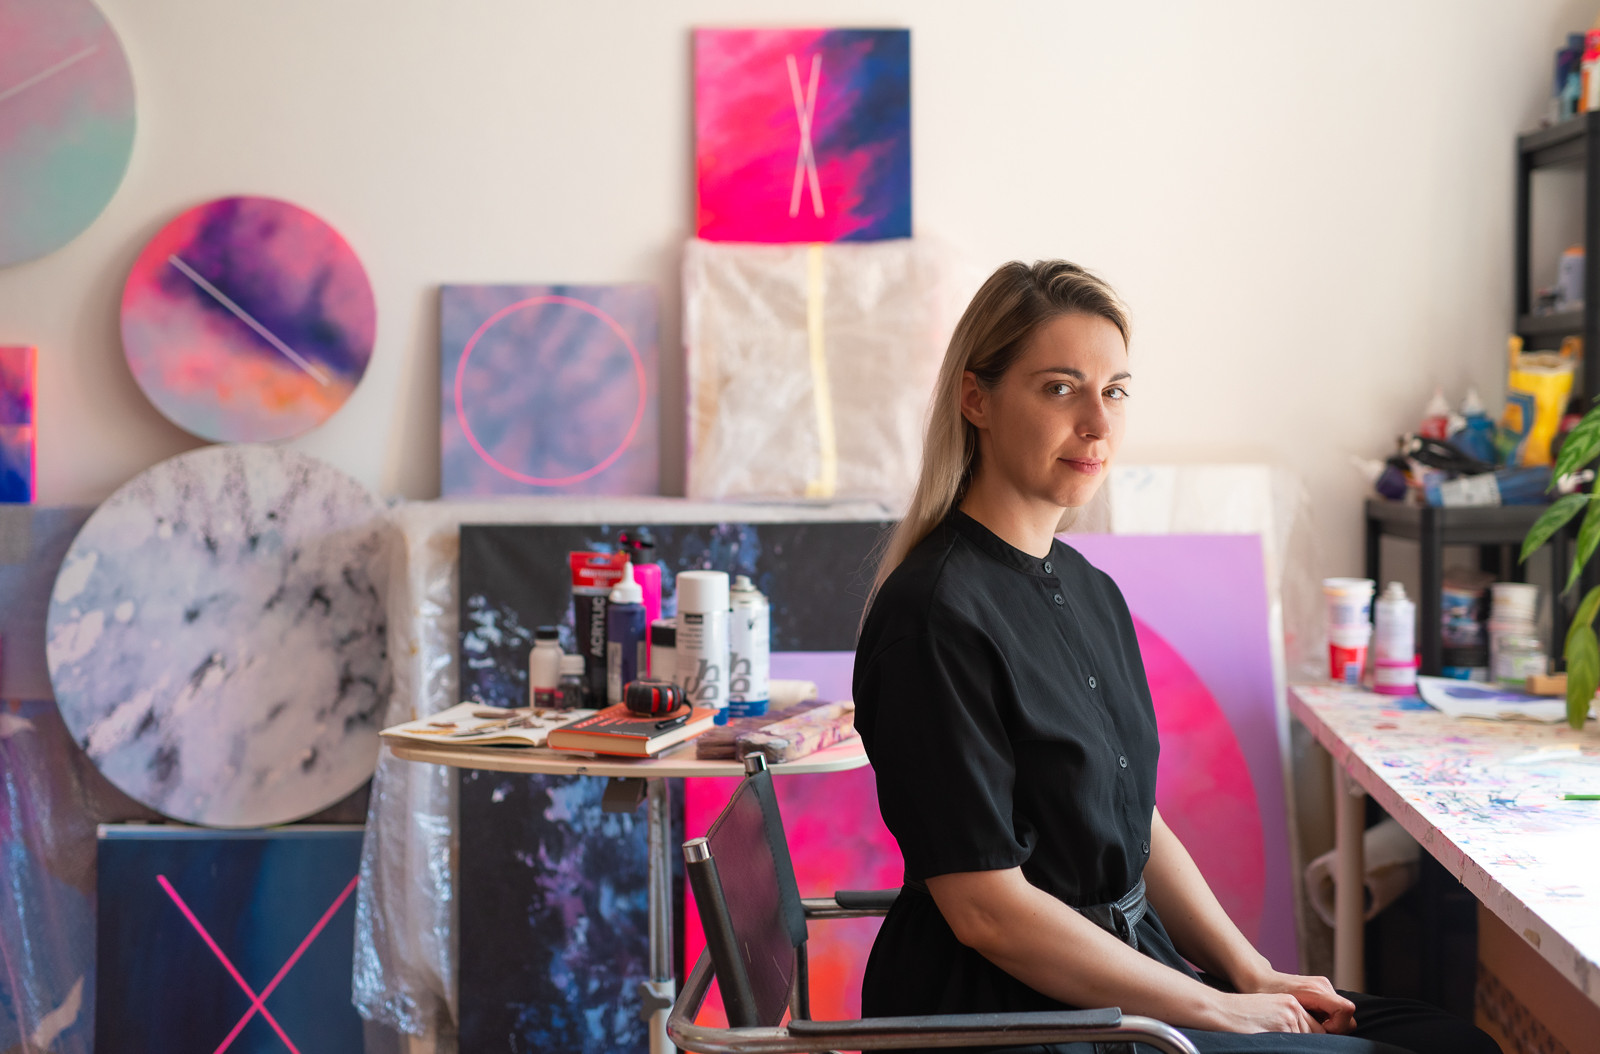 Pracuji rychle, emoce musí na plátno co nejdřív, říká abstraktní malířka Magdaléna Ševčík